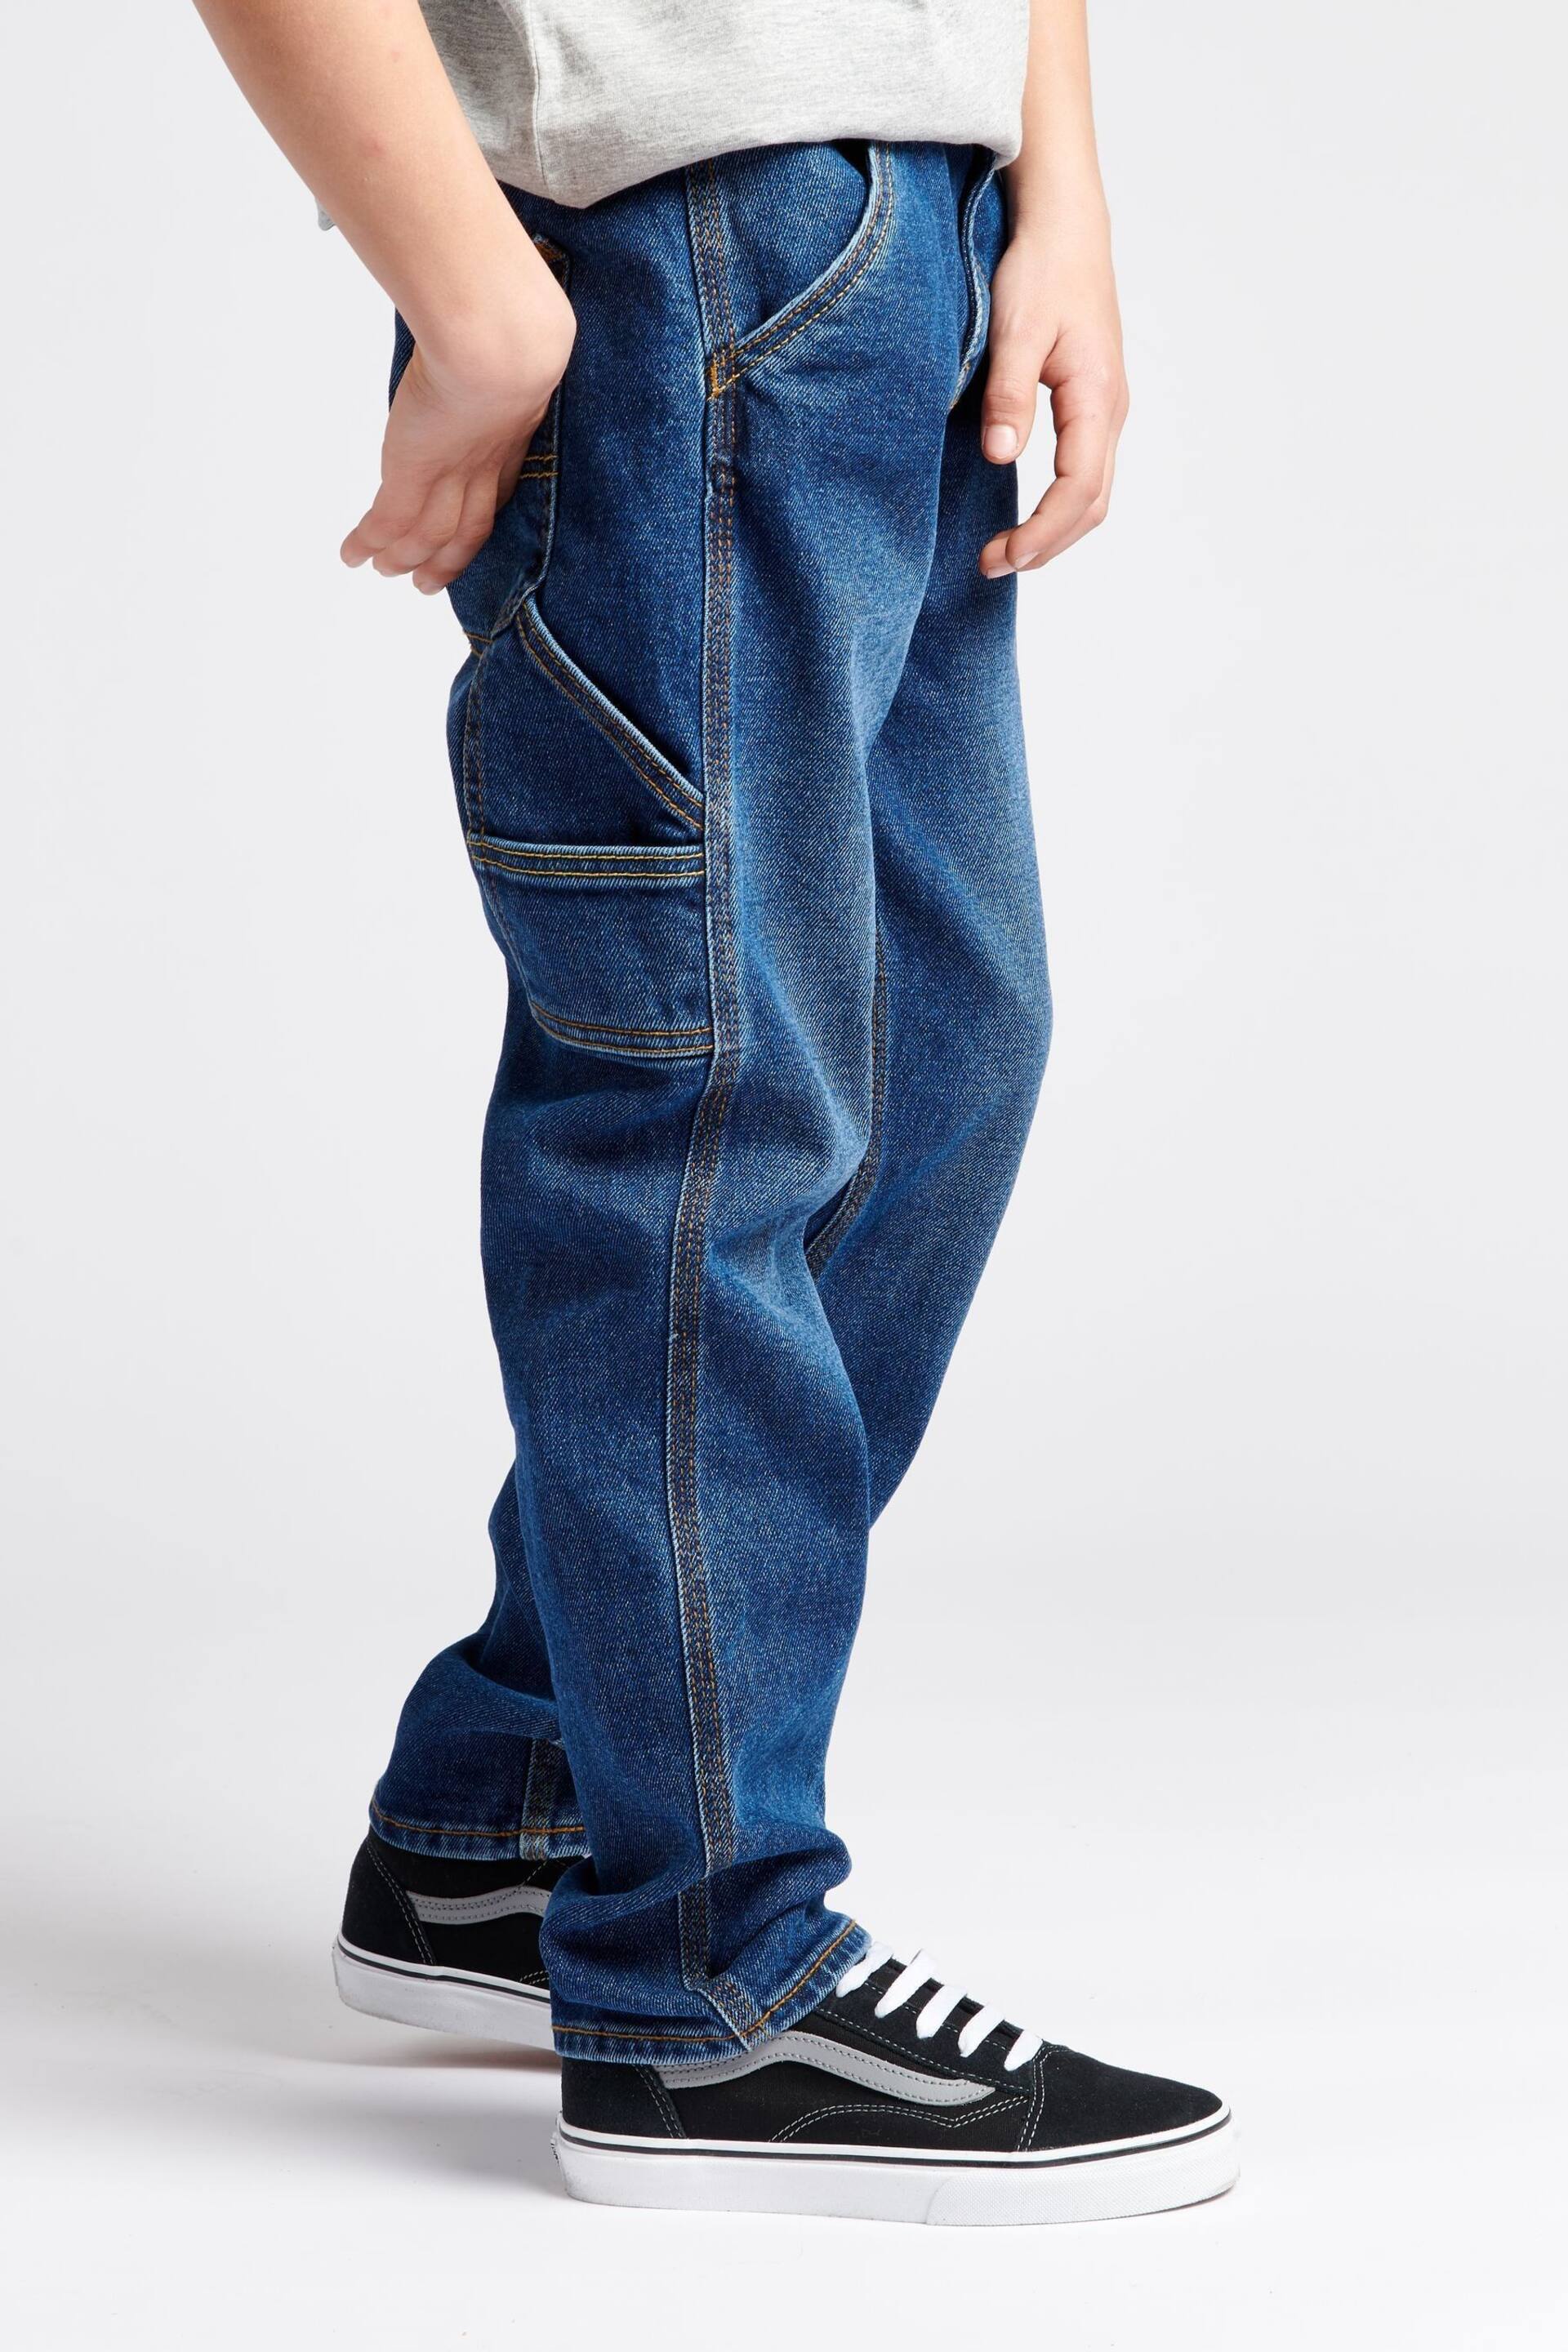 Lee Boys Blue Carpenter Denim Jeans - Image 3 of 6